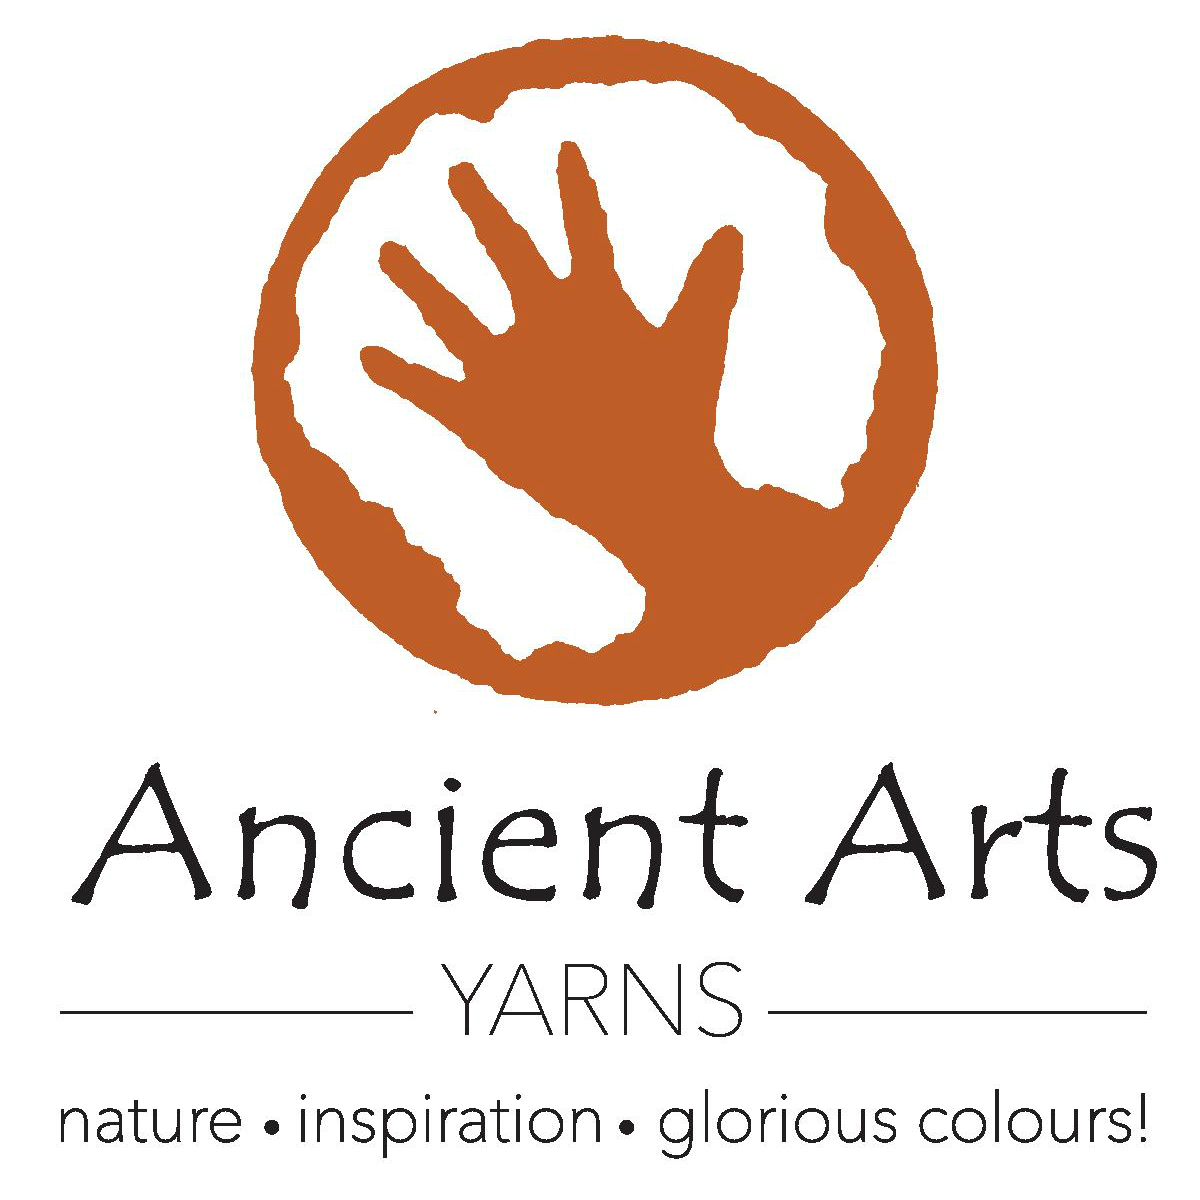 Ancient Arts Yarns logo of a hand in a circle